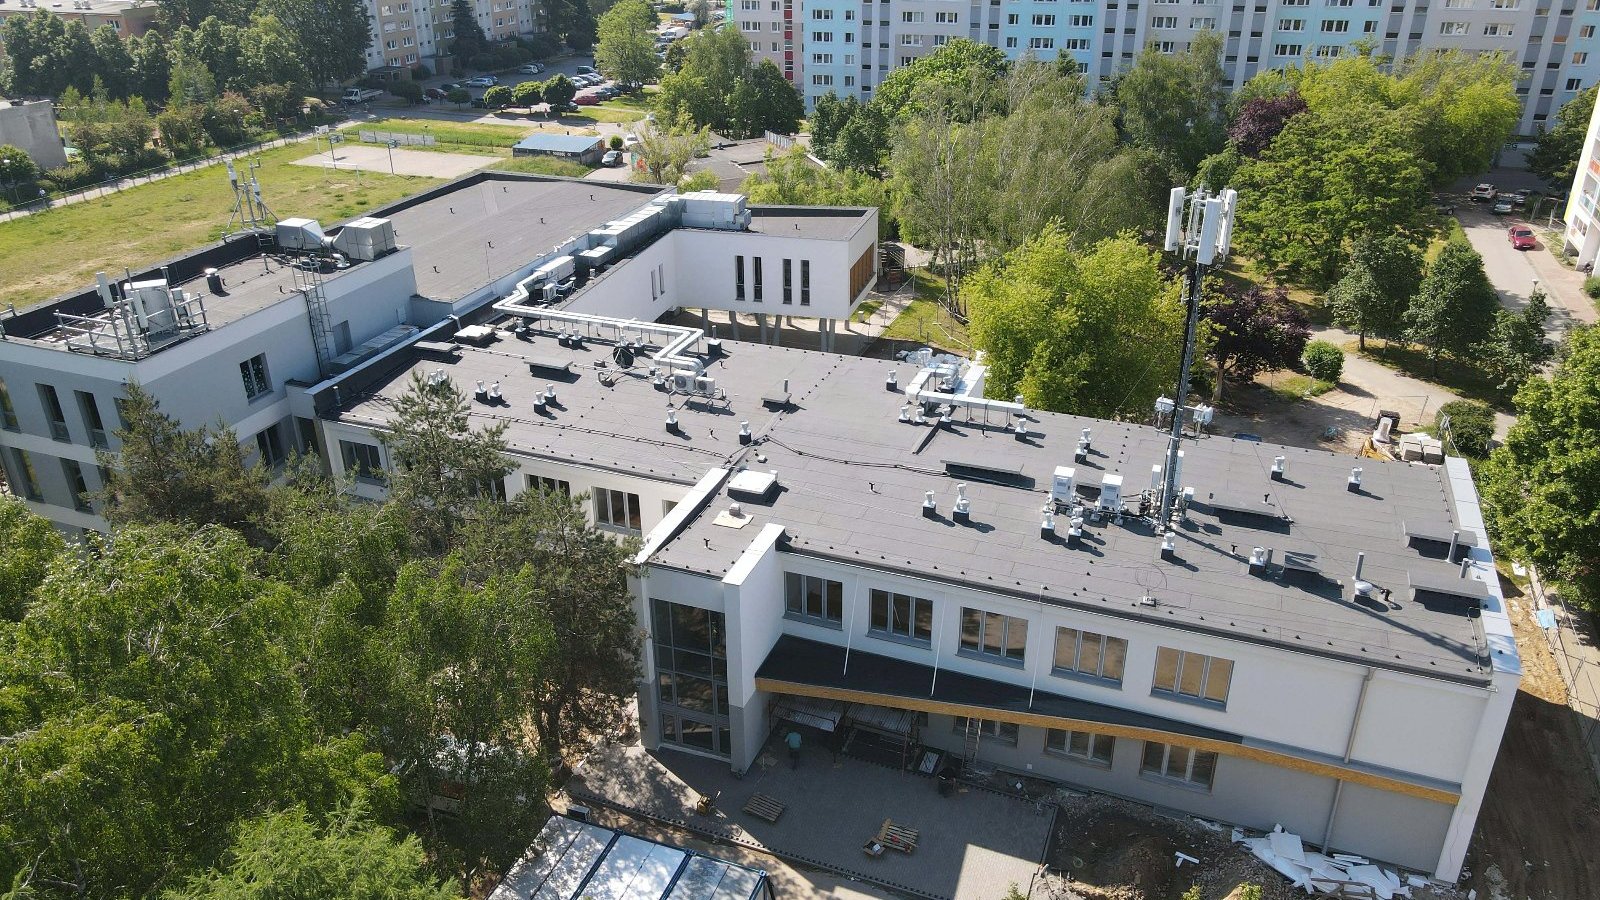 Zdjecie przedstawia budynek szkoły z góry.